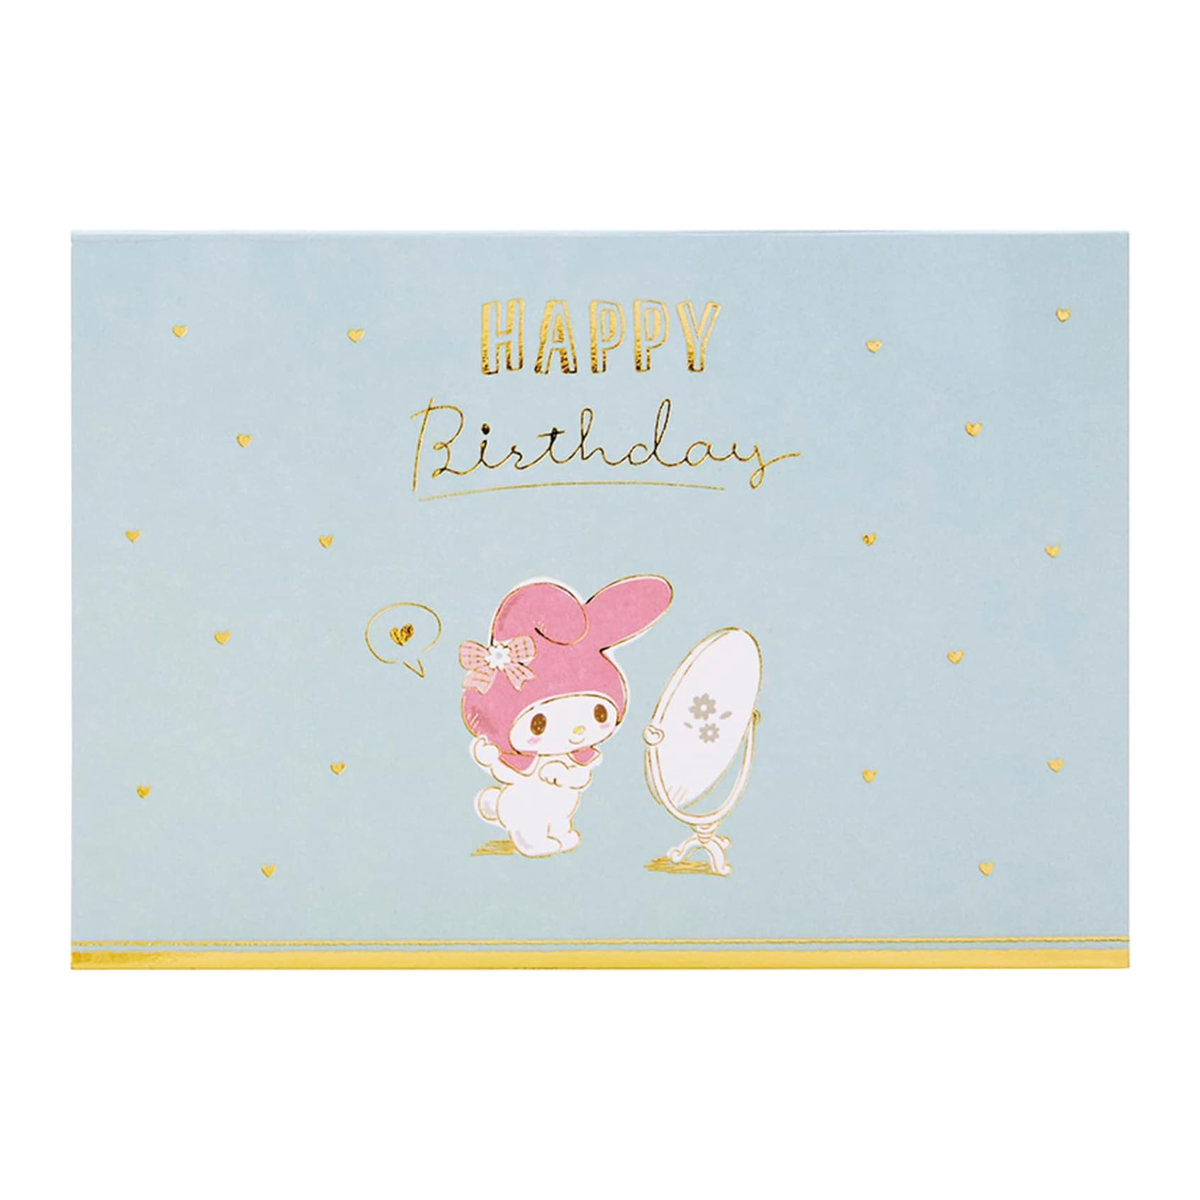 Sanrio Cinnamoroll Greeting Card by Edward Maulana